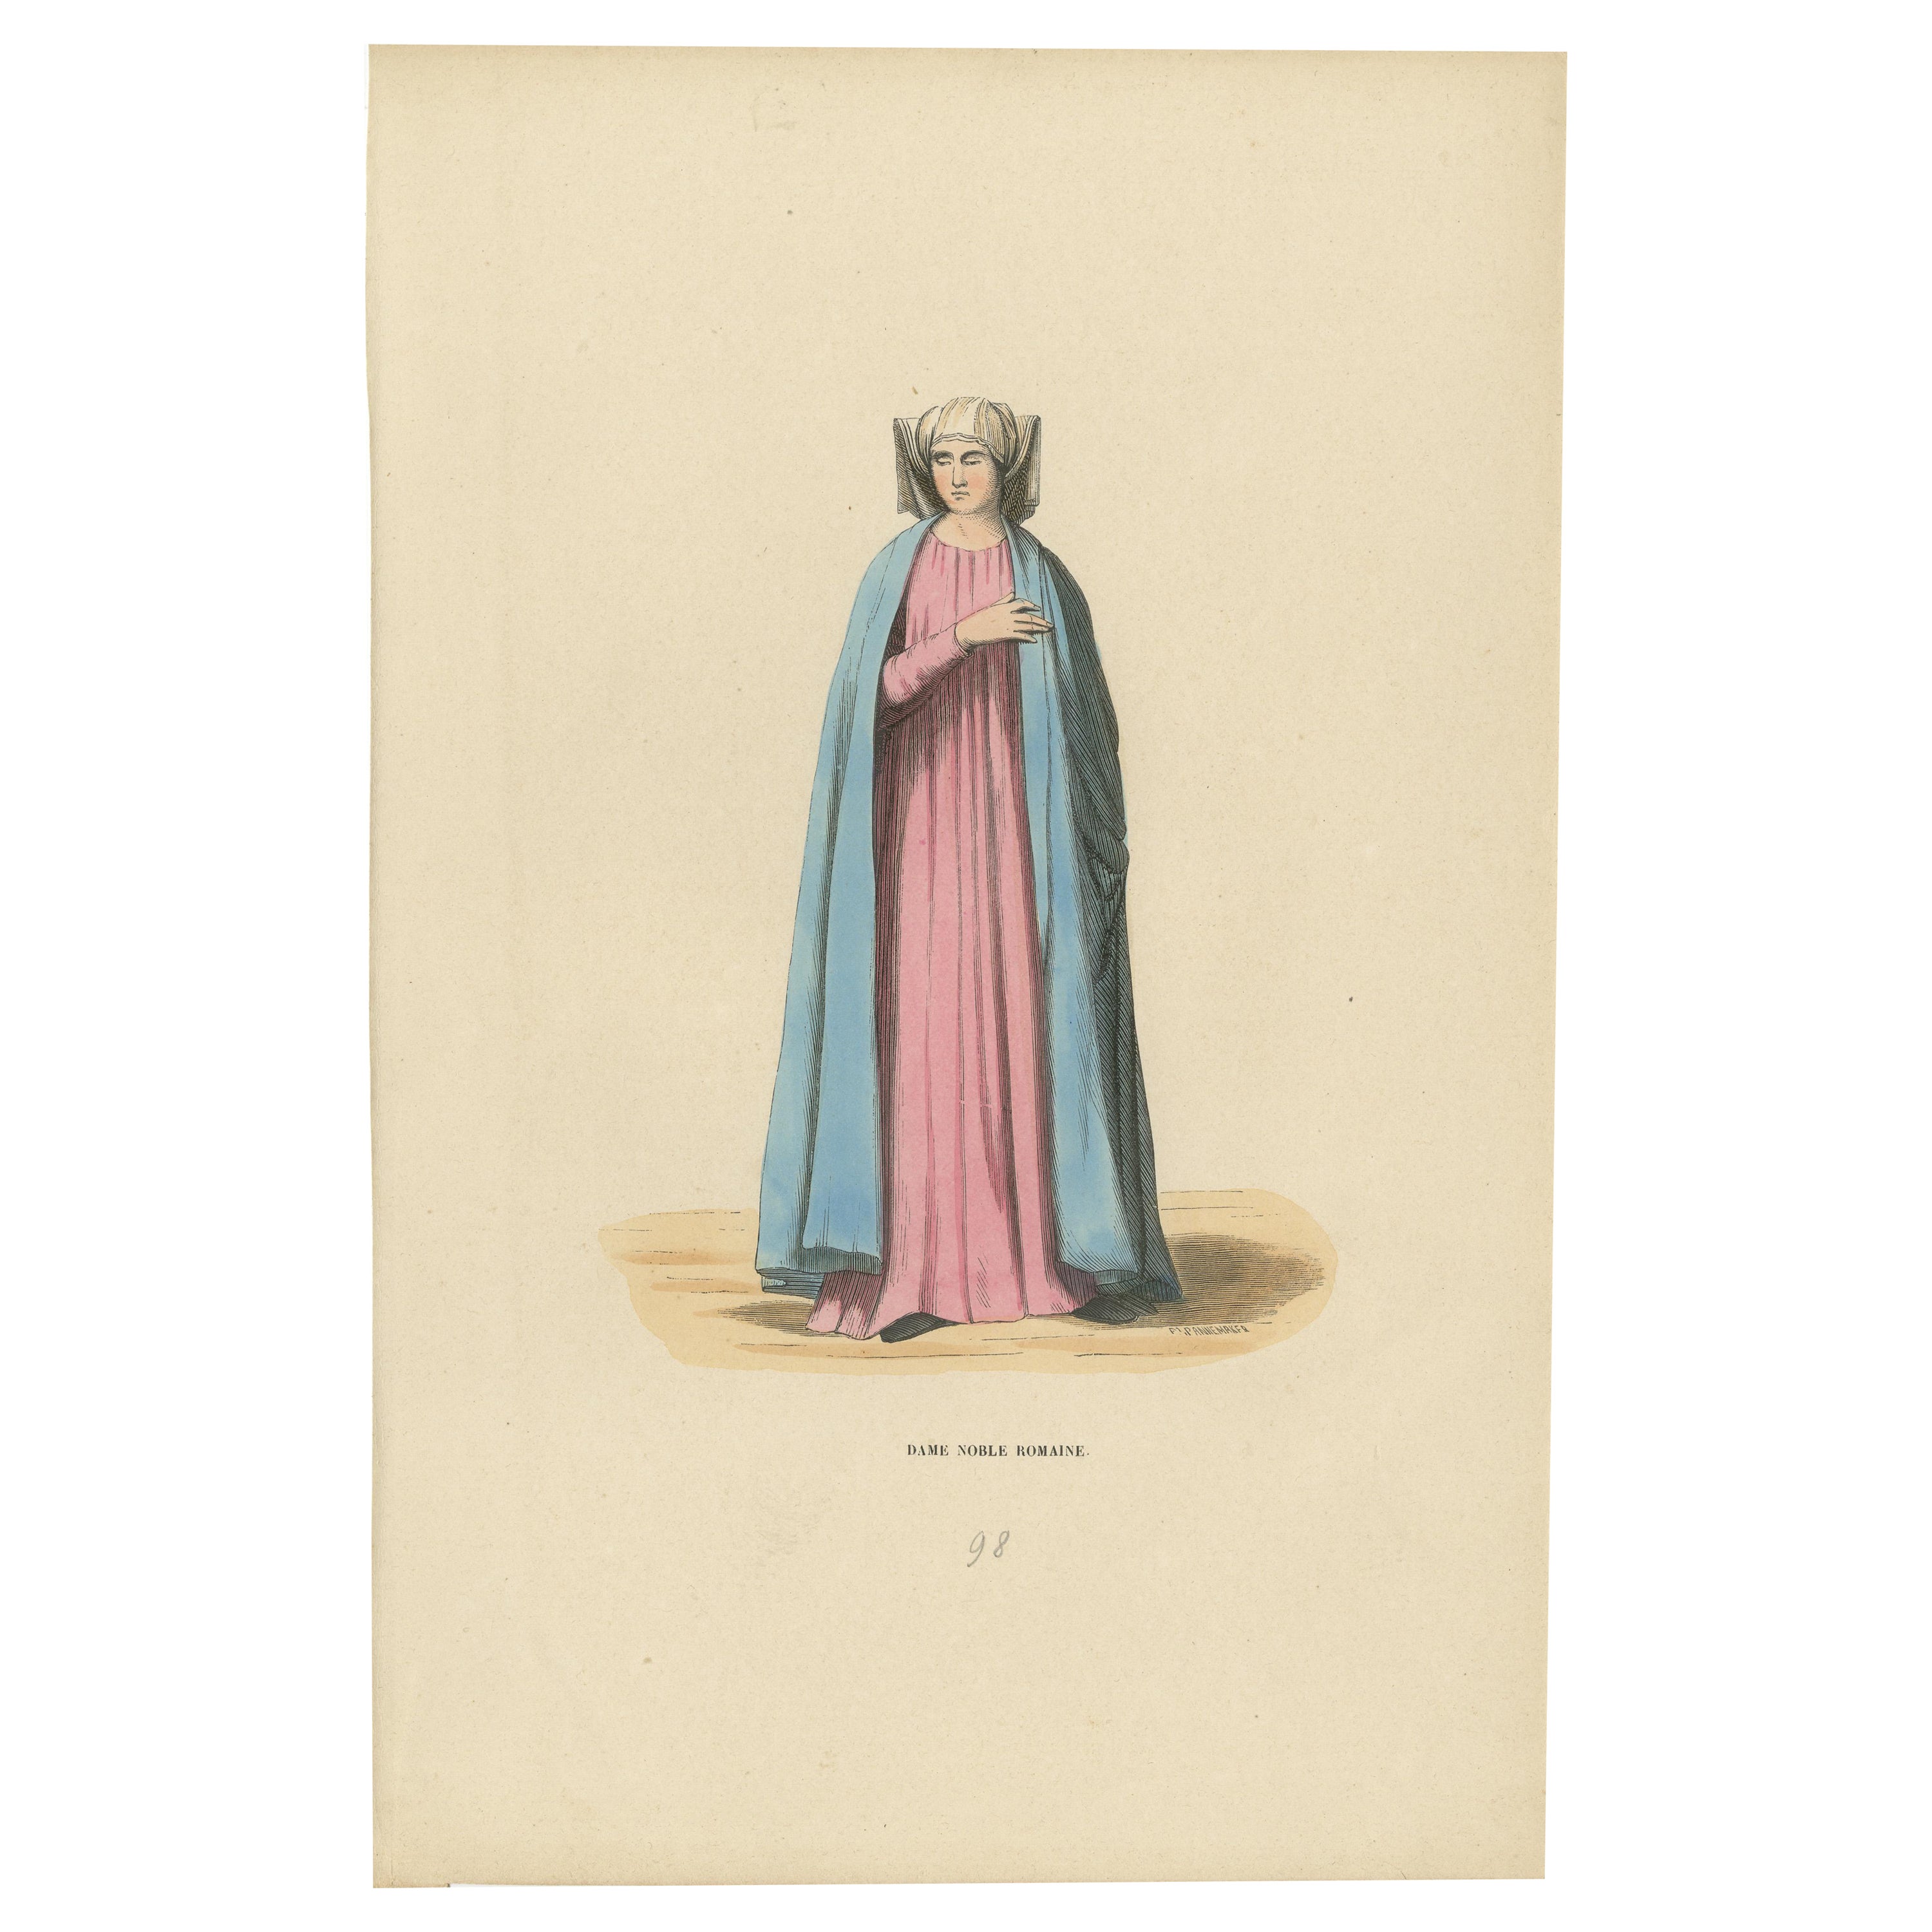 Noble dame romaine du Moyen Âge, colorée à la main et publiée en 1847 en vente